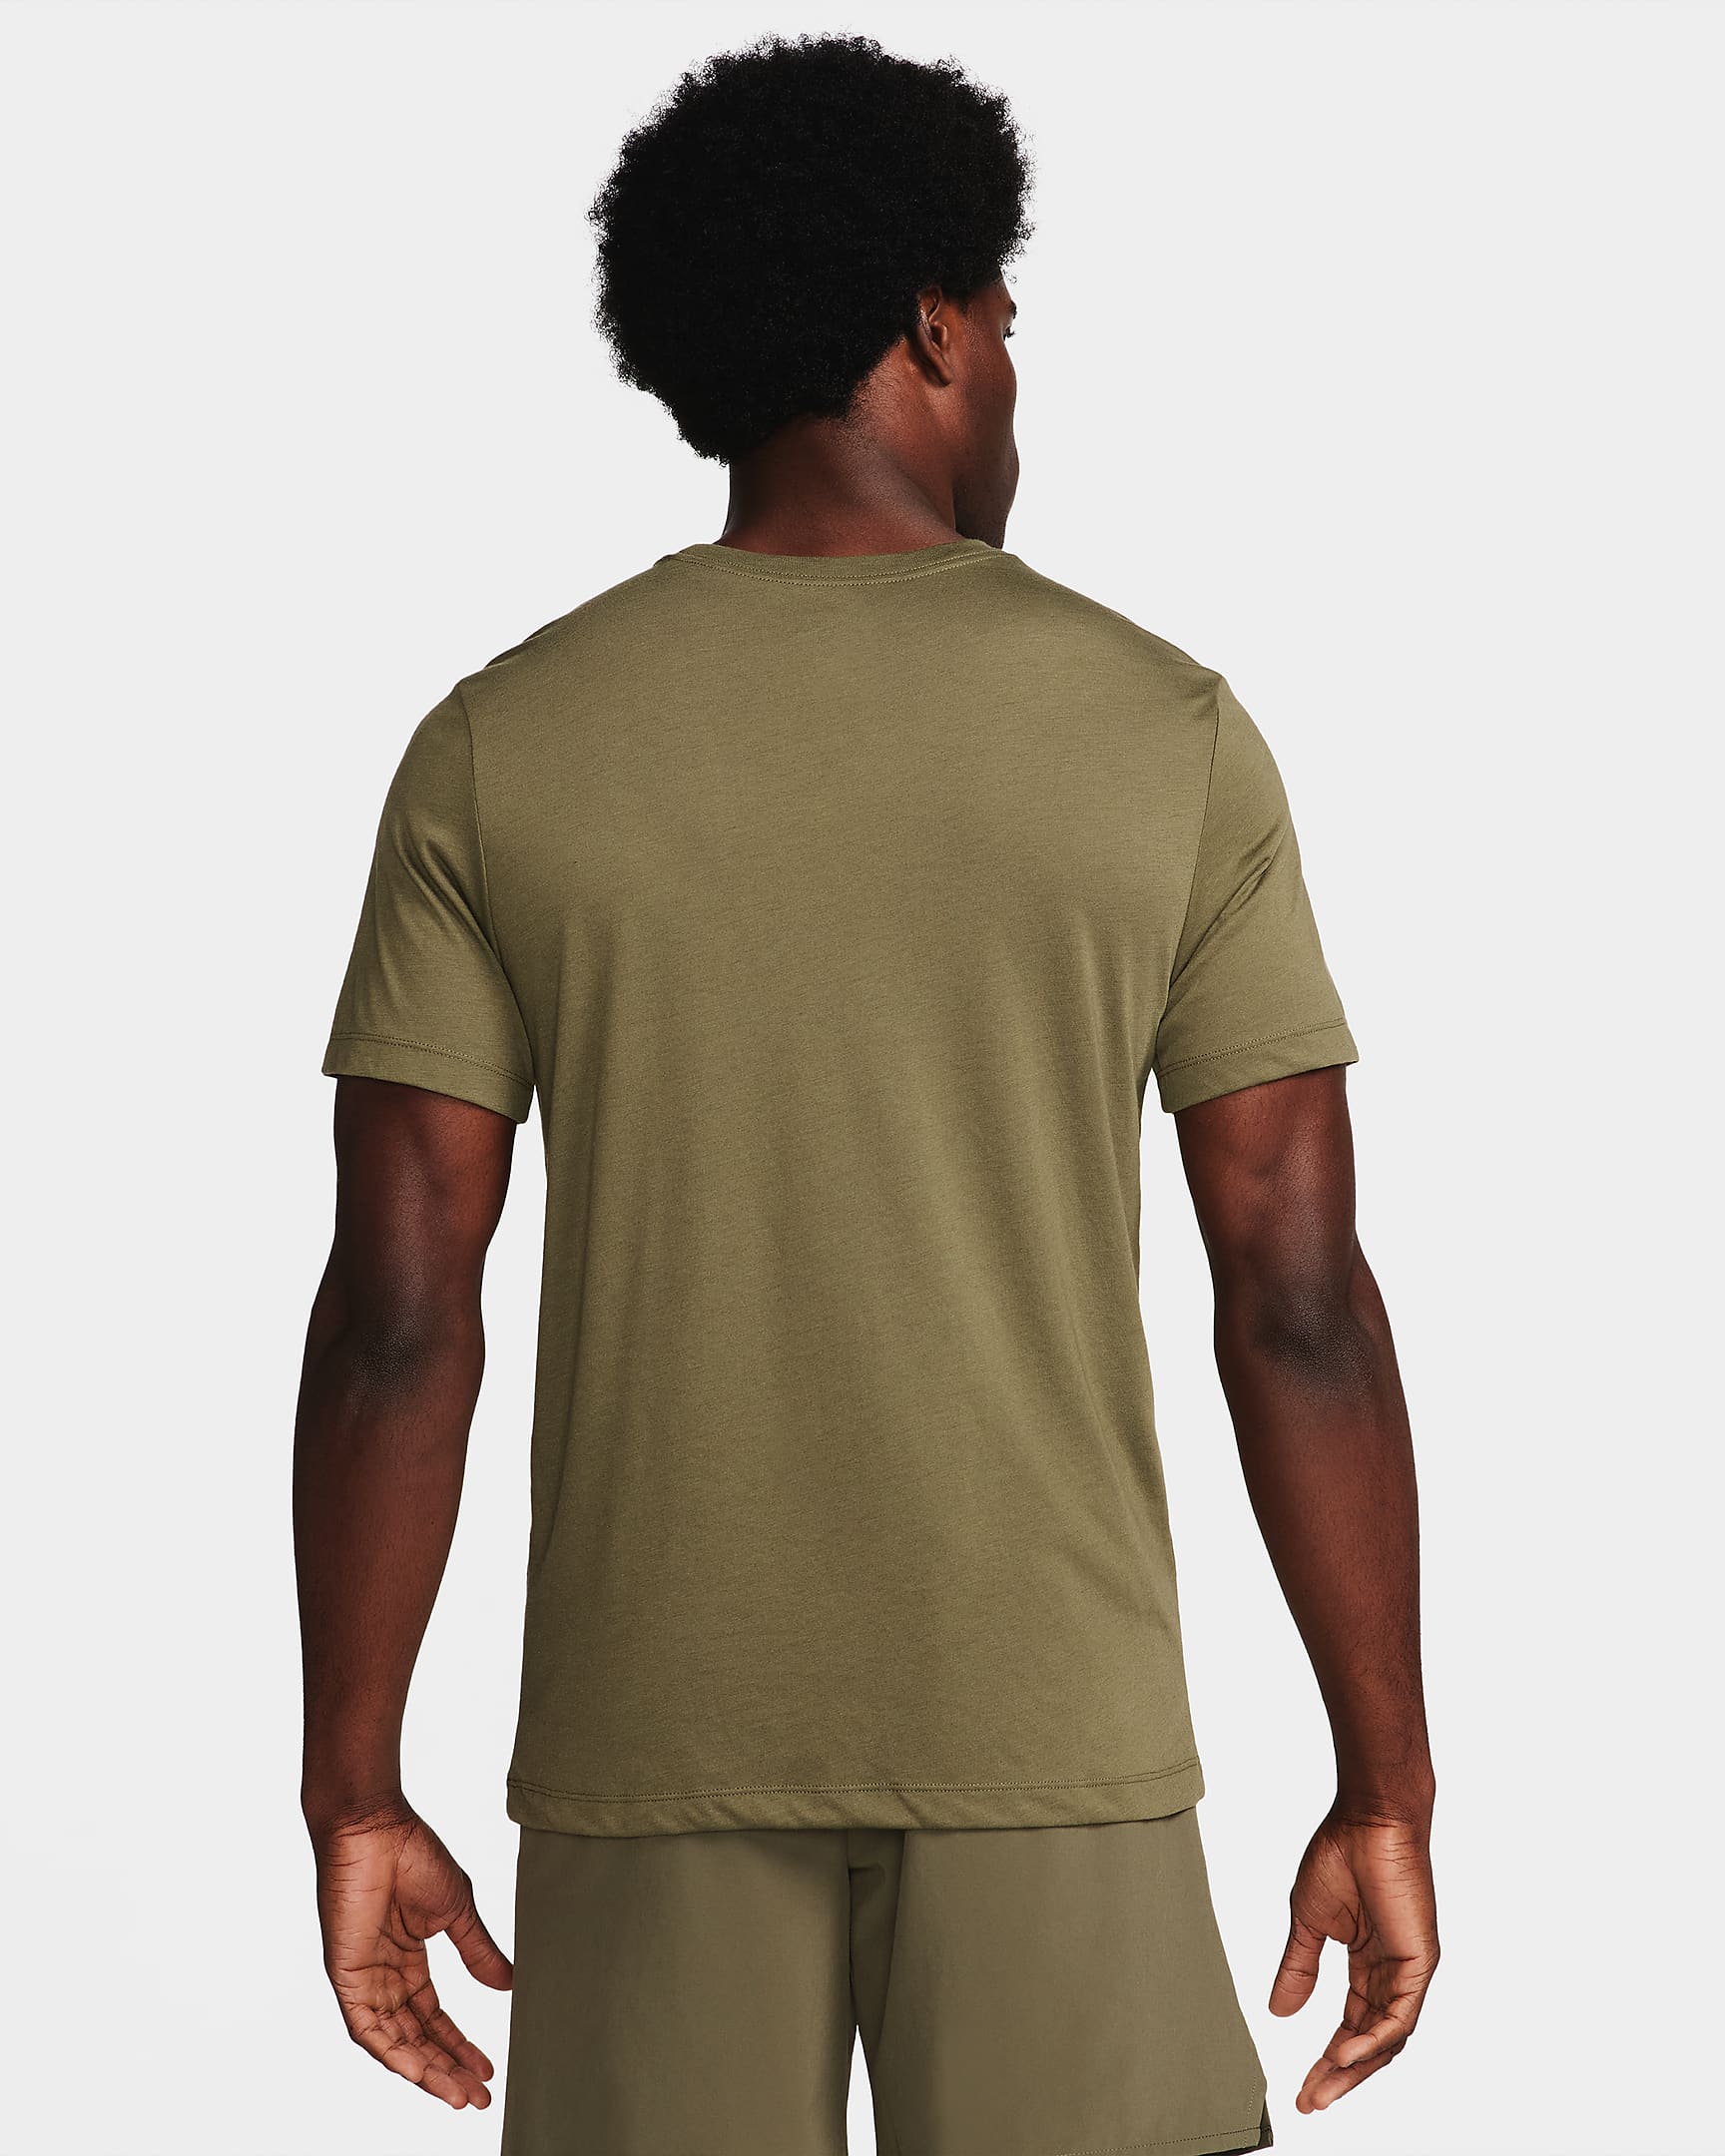 Nike Dri-Fit T-Shirt - Khaki